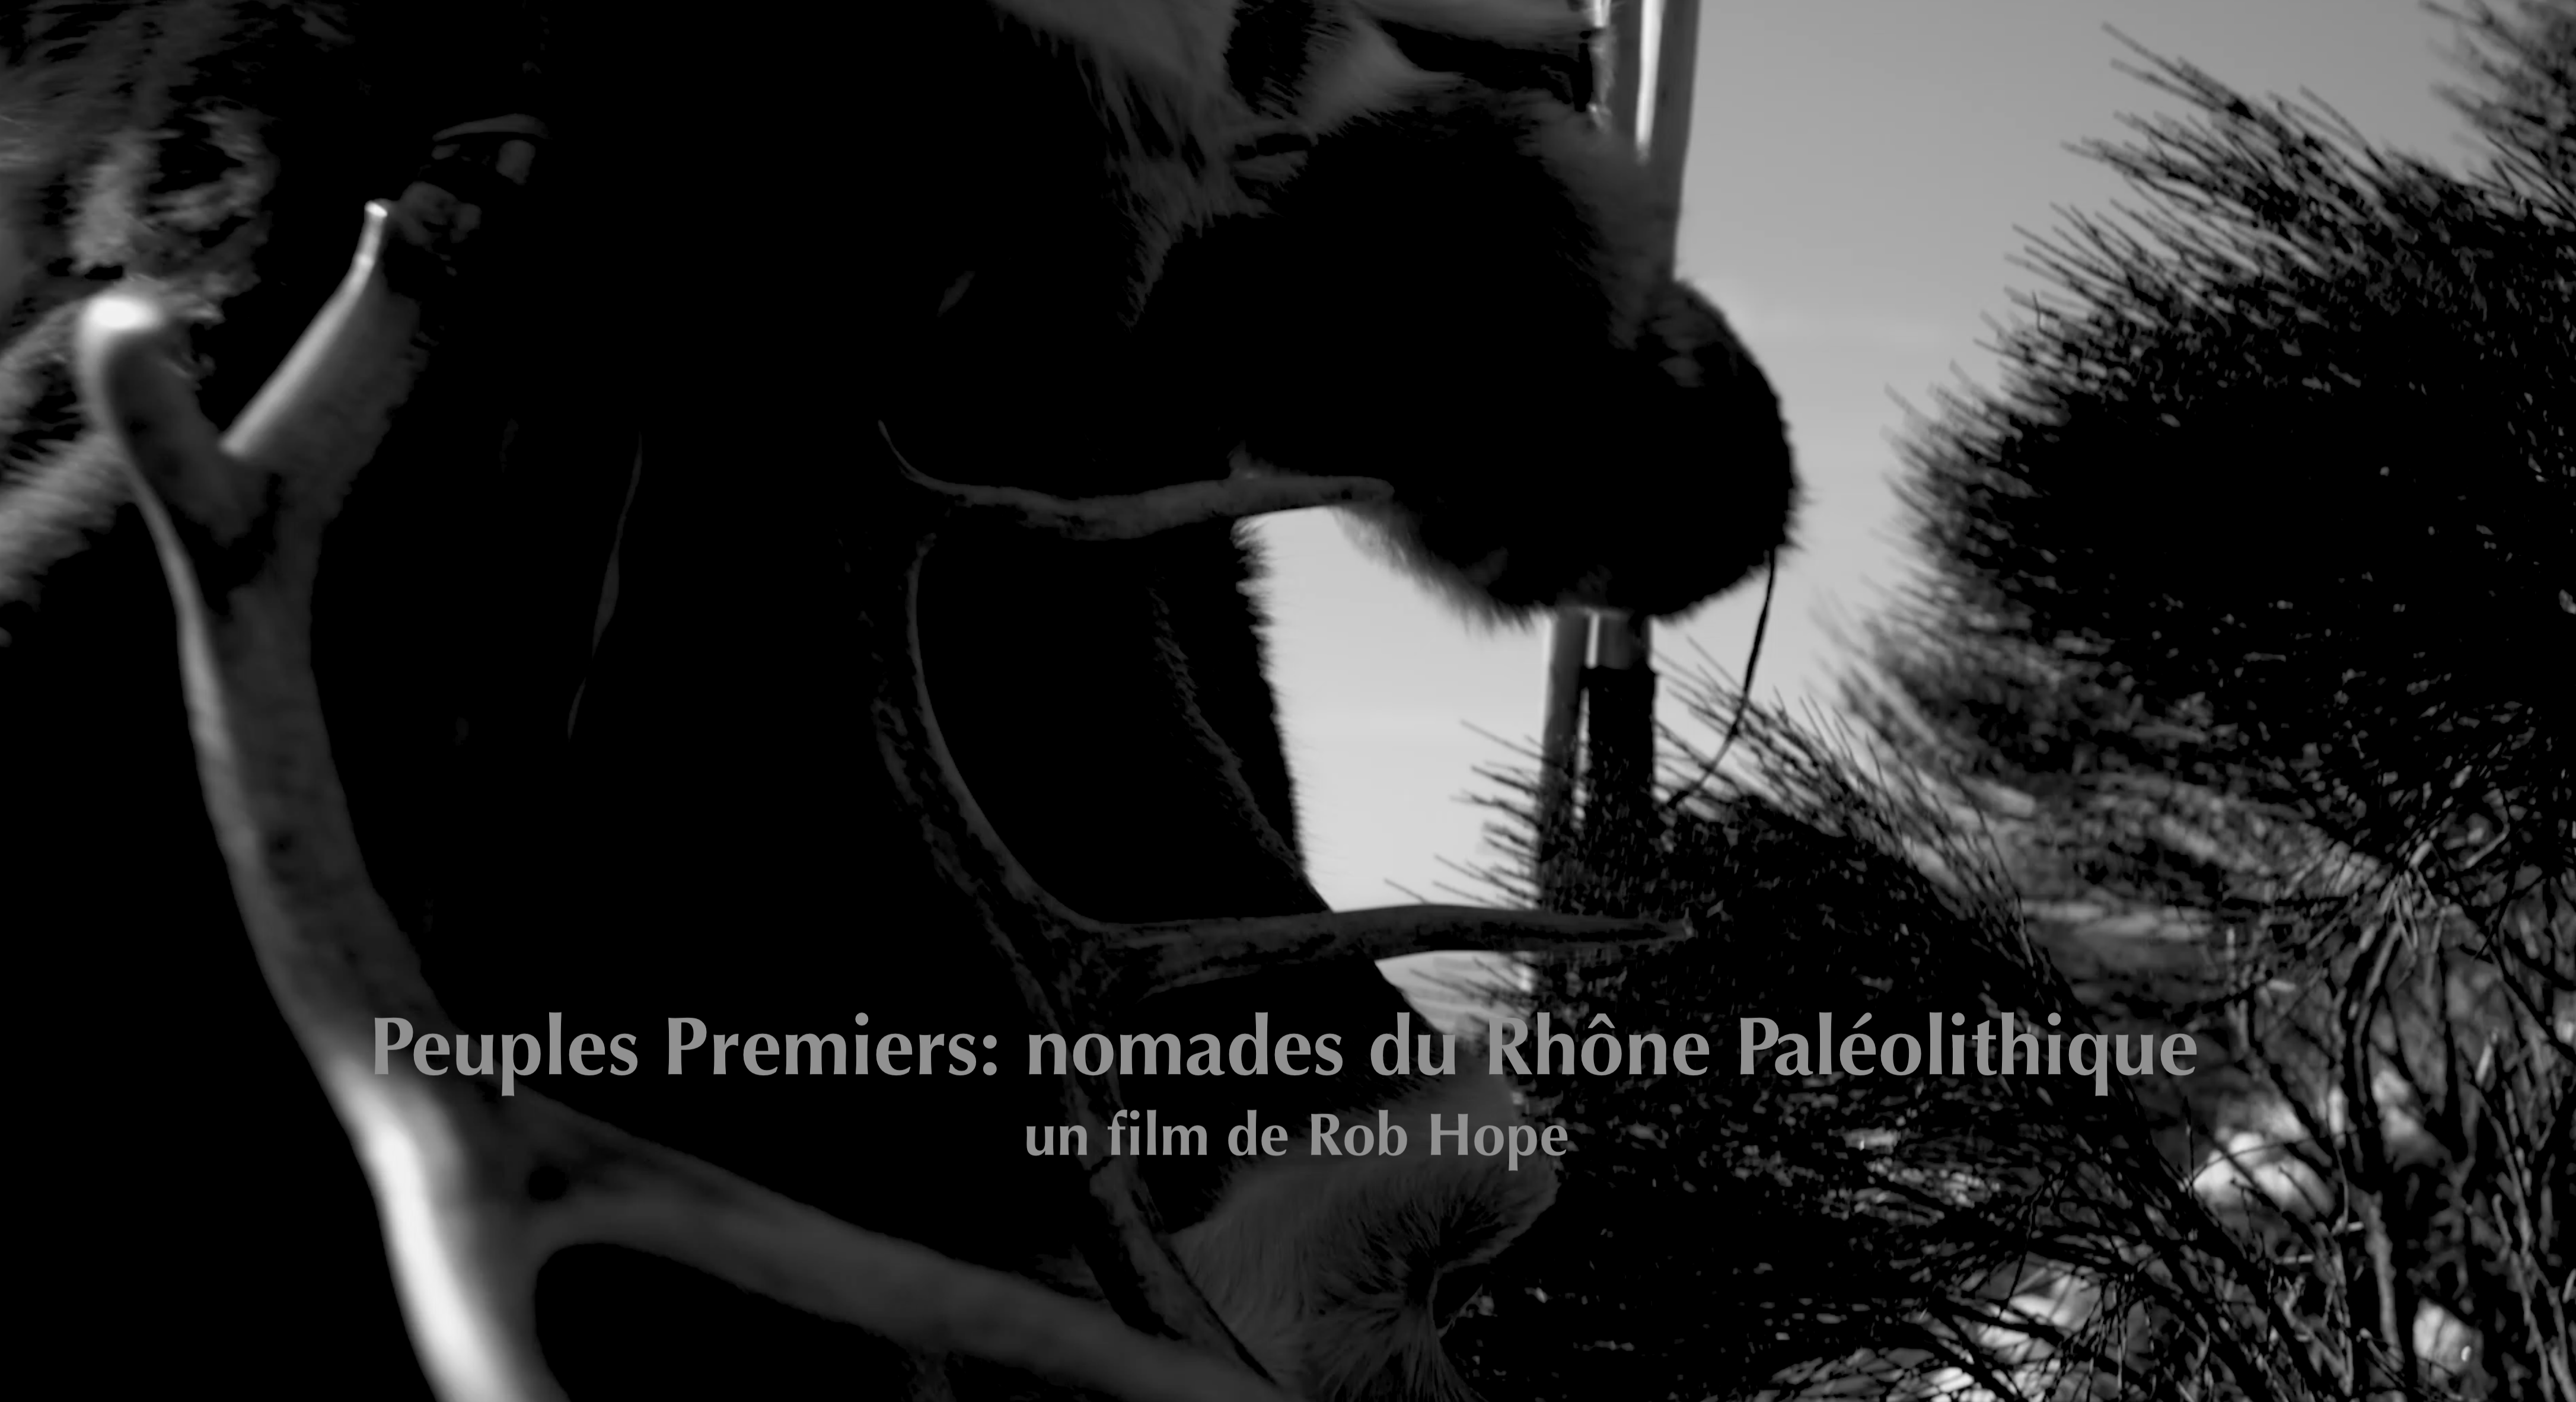 Premiers peuples : nomades du Rhône paléolithique